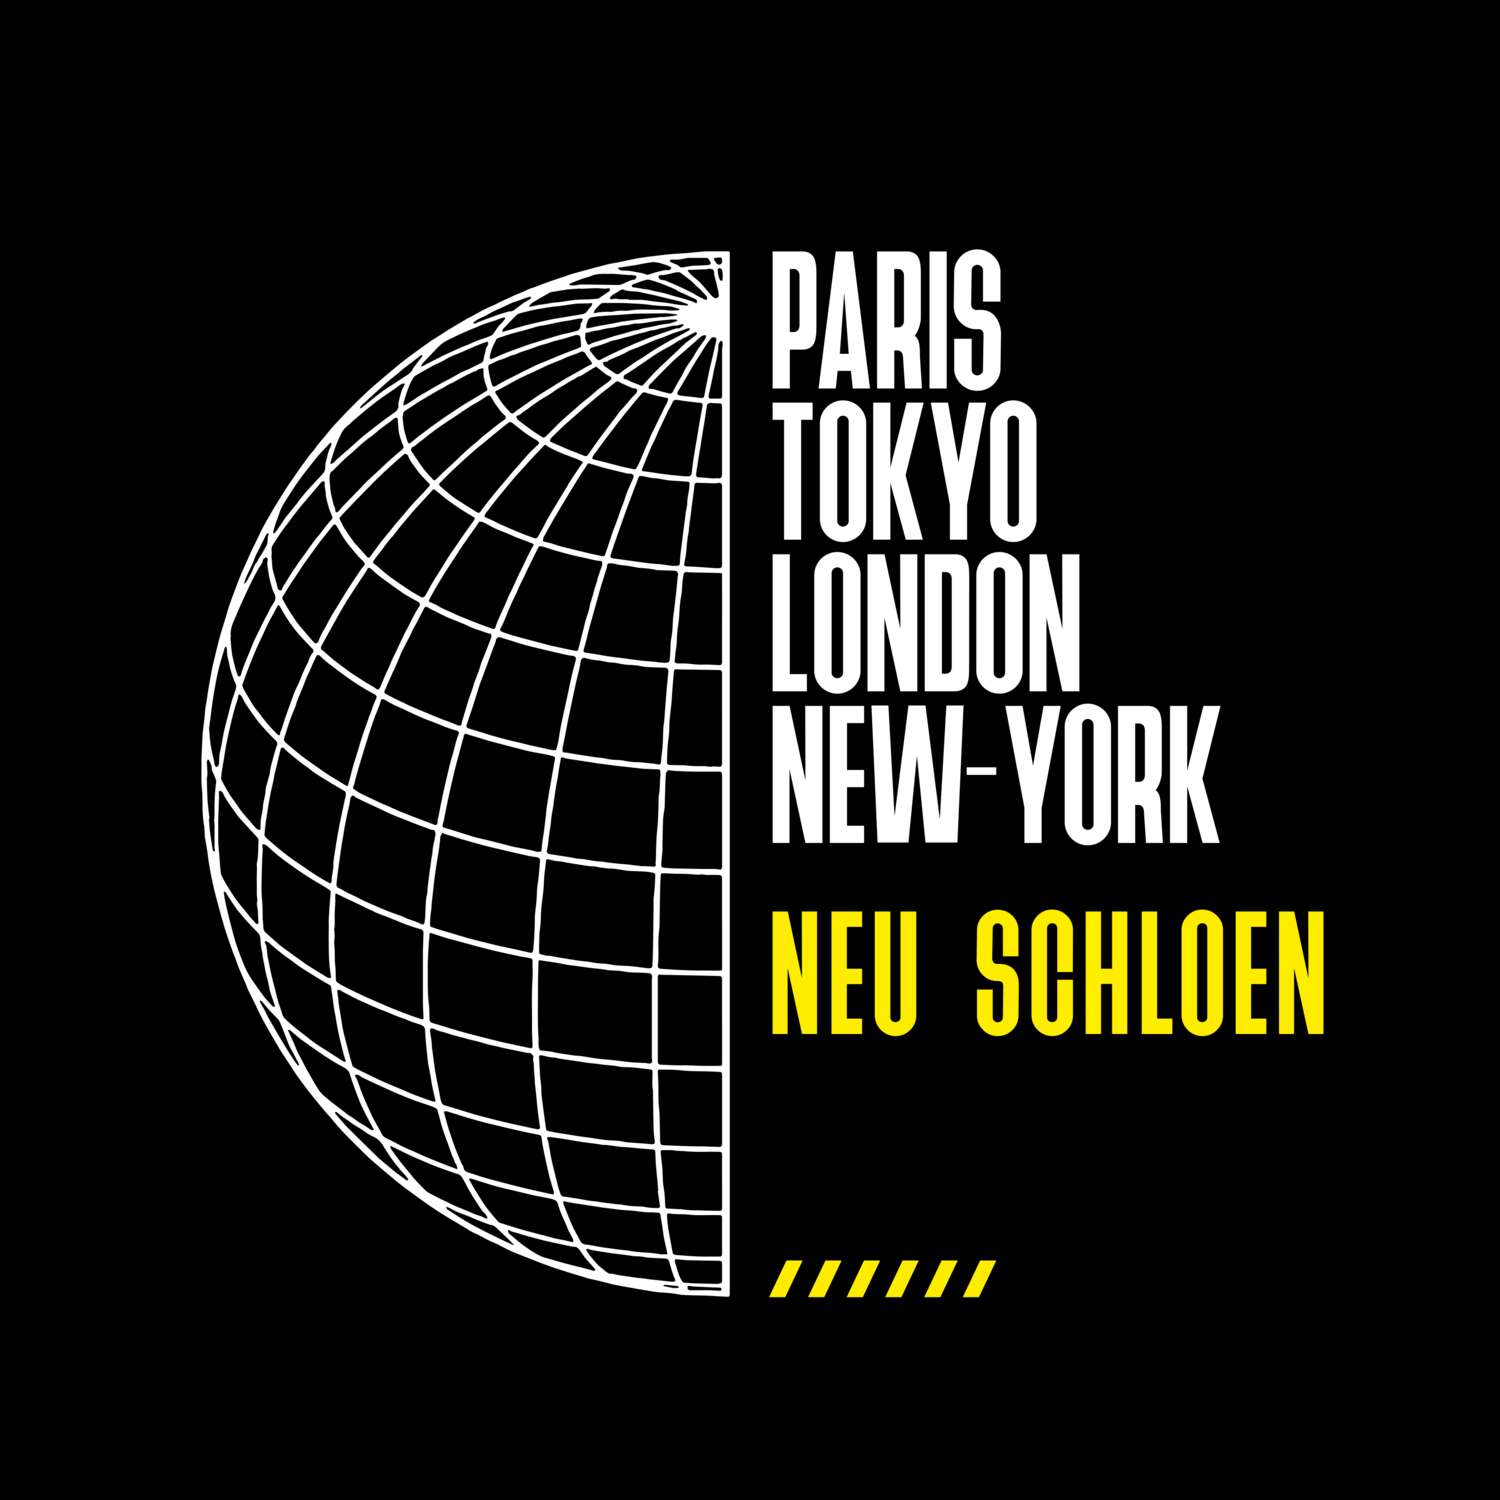 Neu Schloen T-Shirt »Paris Tokyo London«